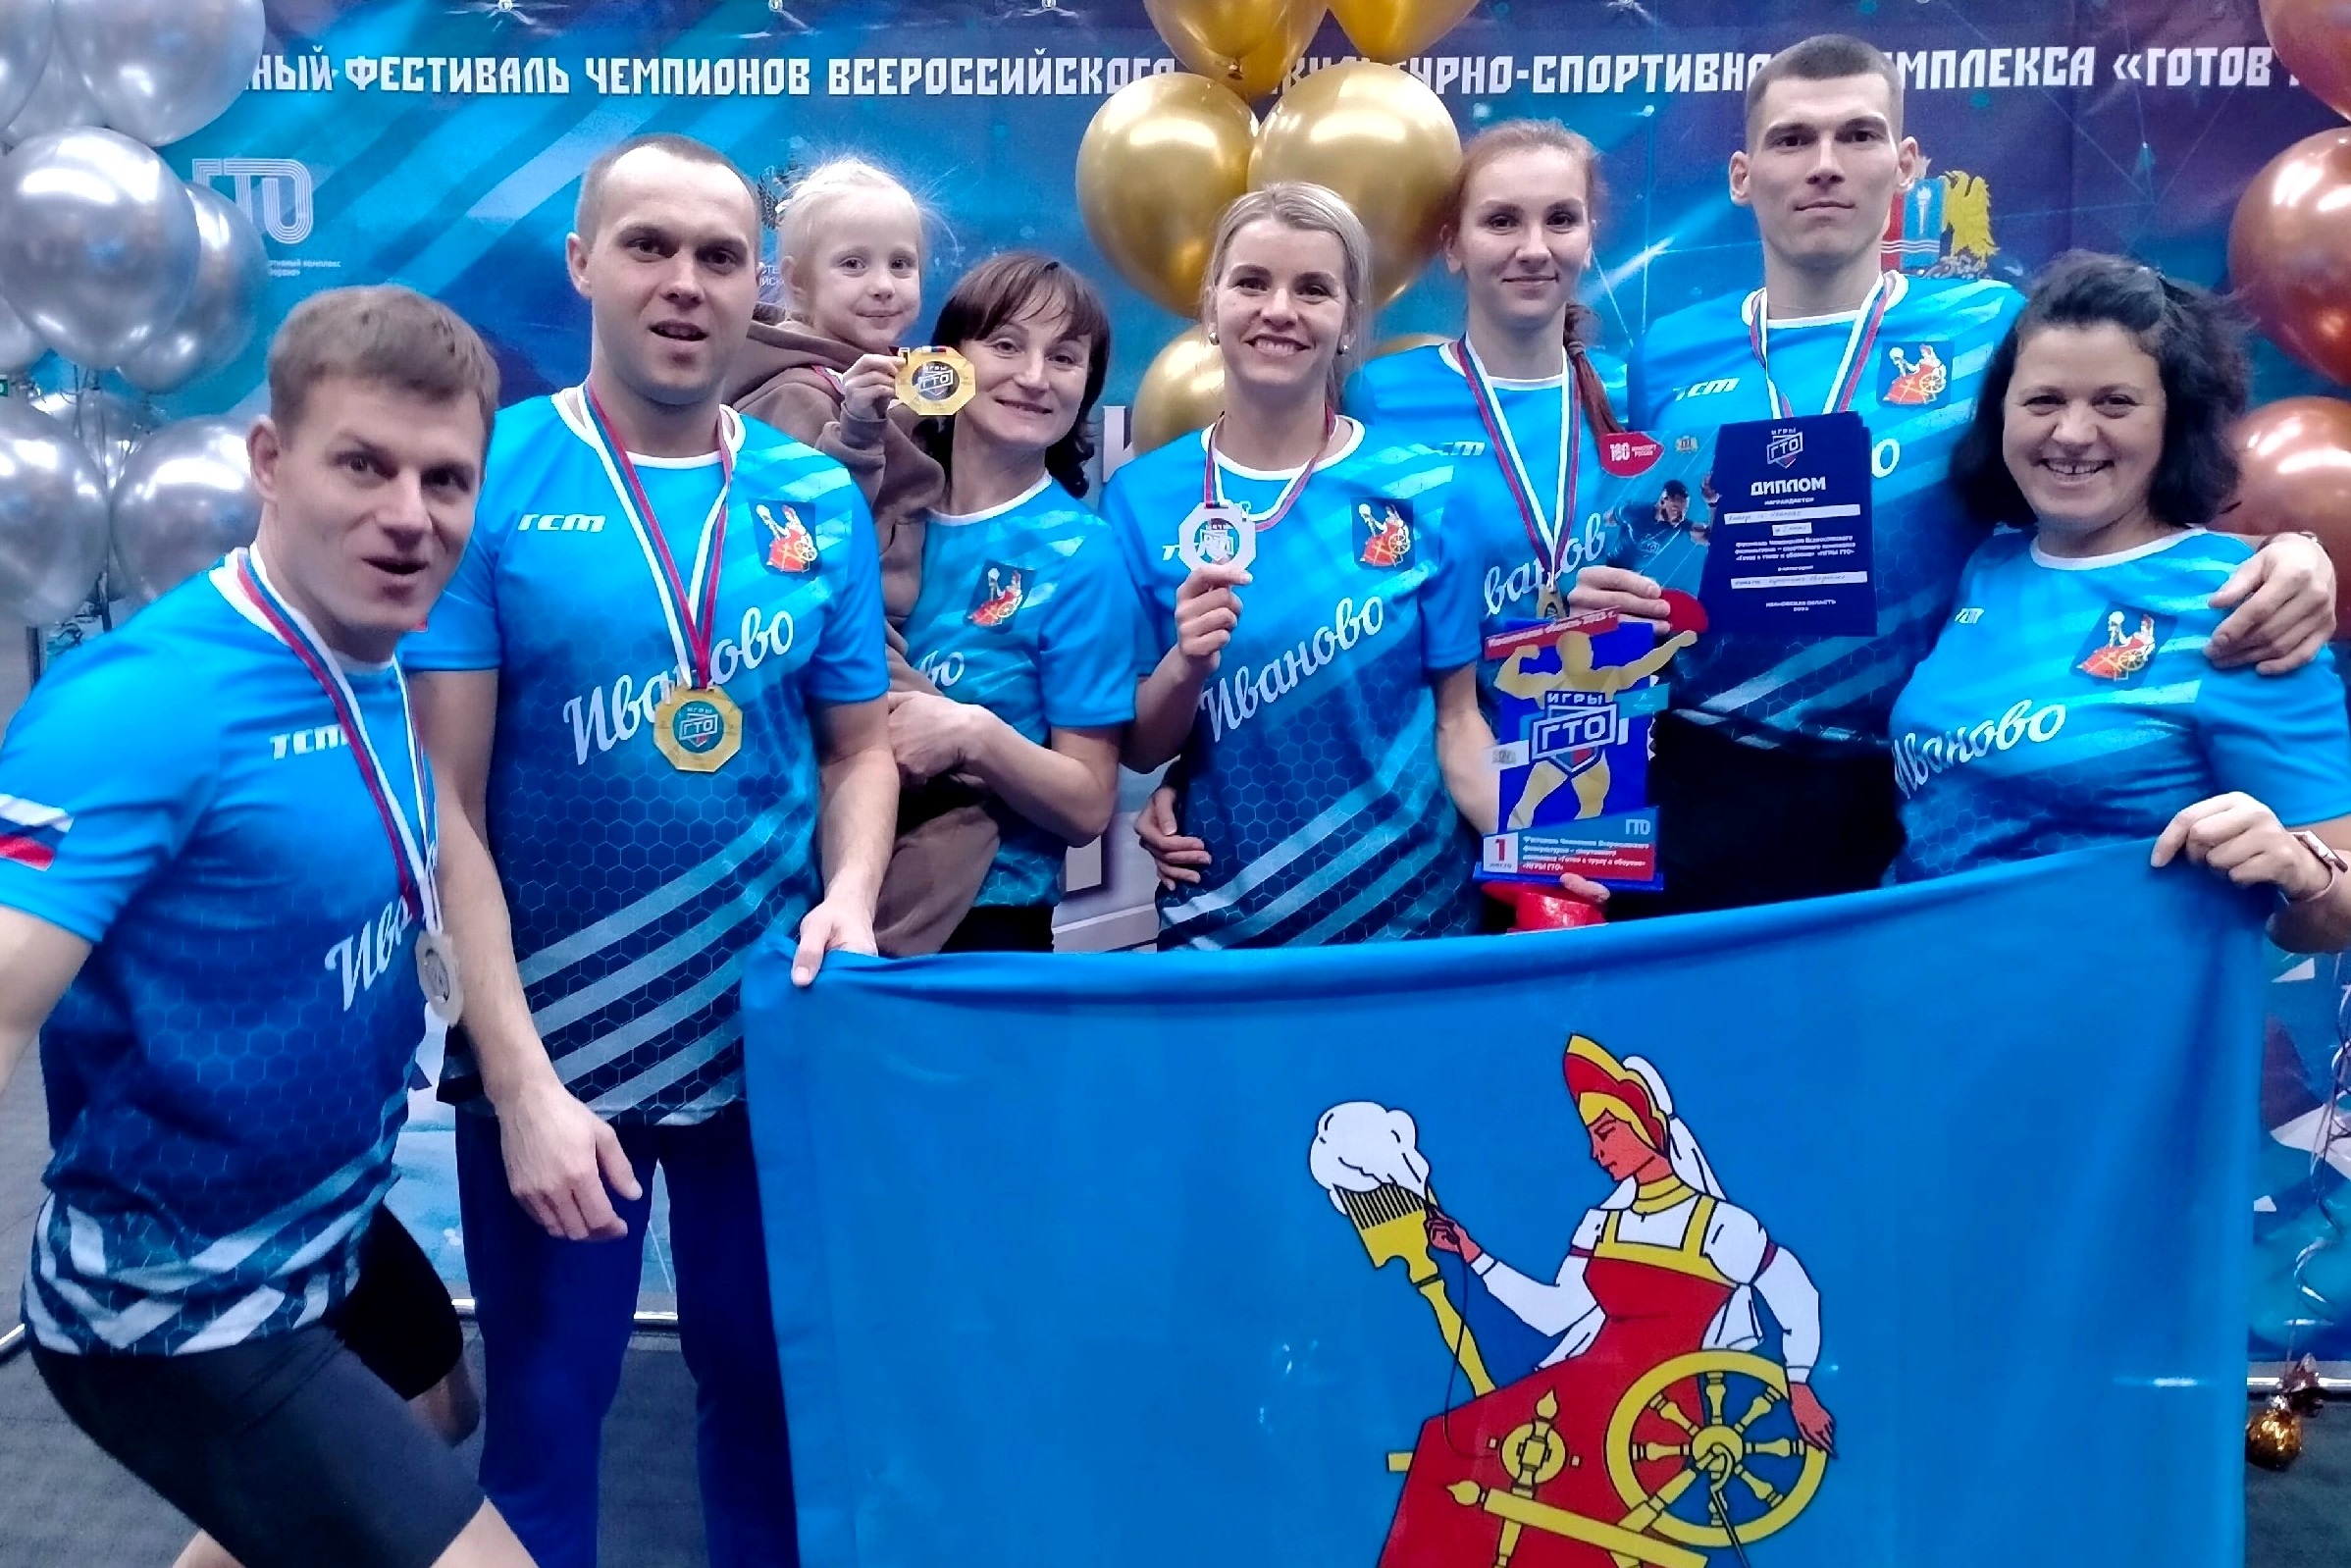 Команда города Иванова одержала победу в эстафете регионального фестиваля «Игры ГТО».